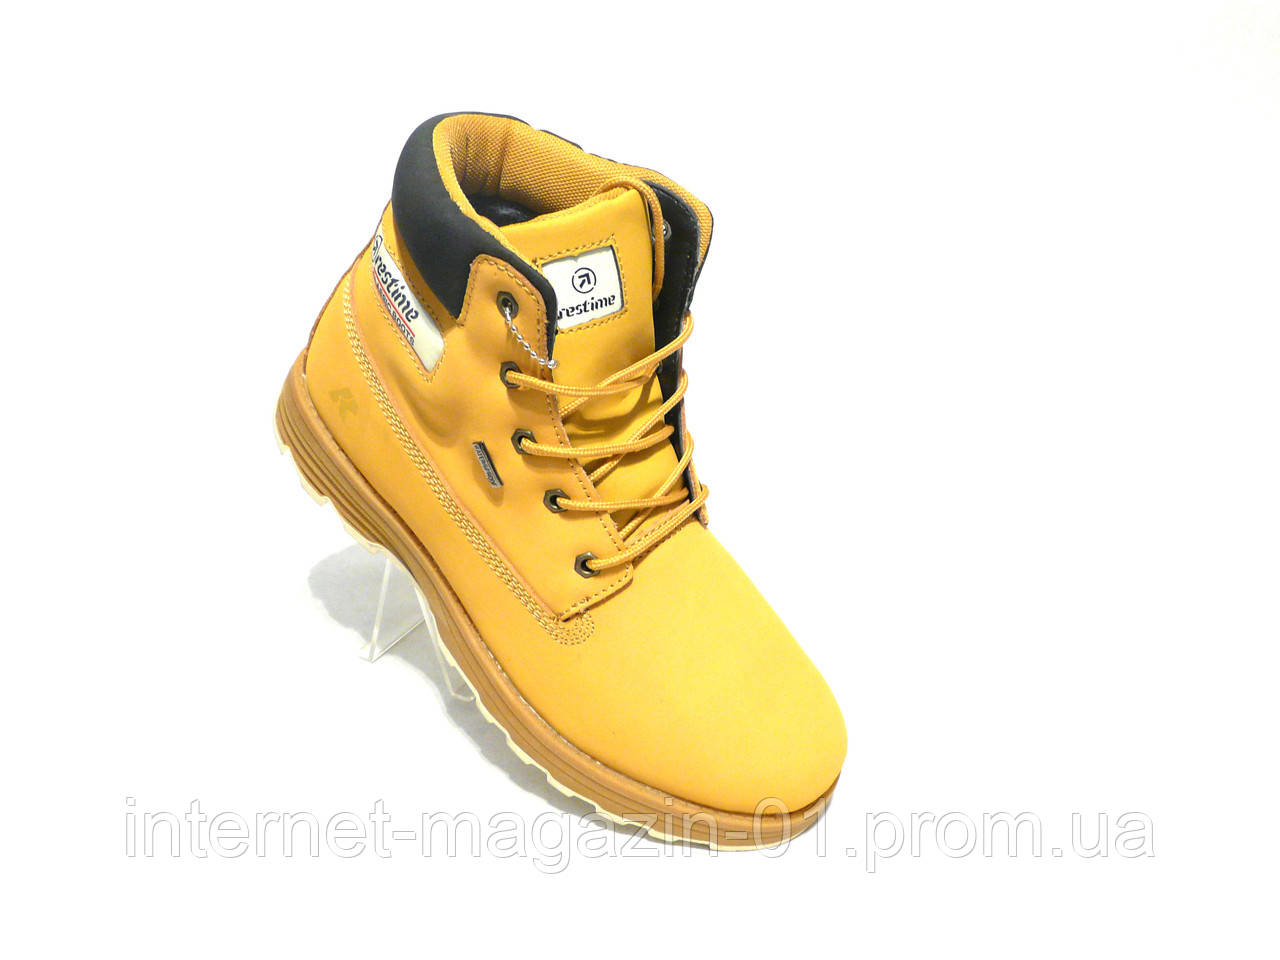 Зимові чоловічі шкіряні черевики Restime стиль Timberland жовтий